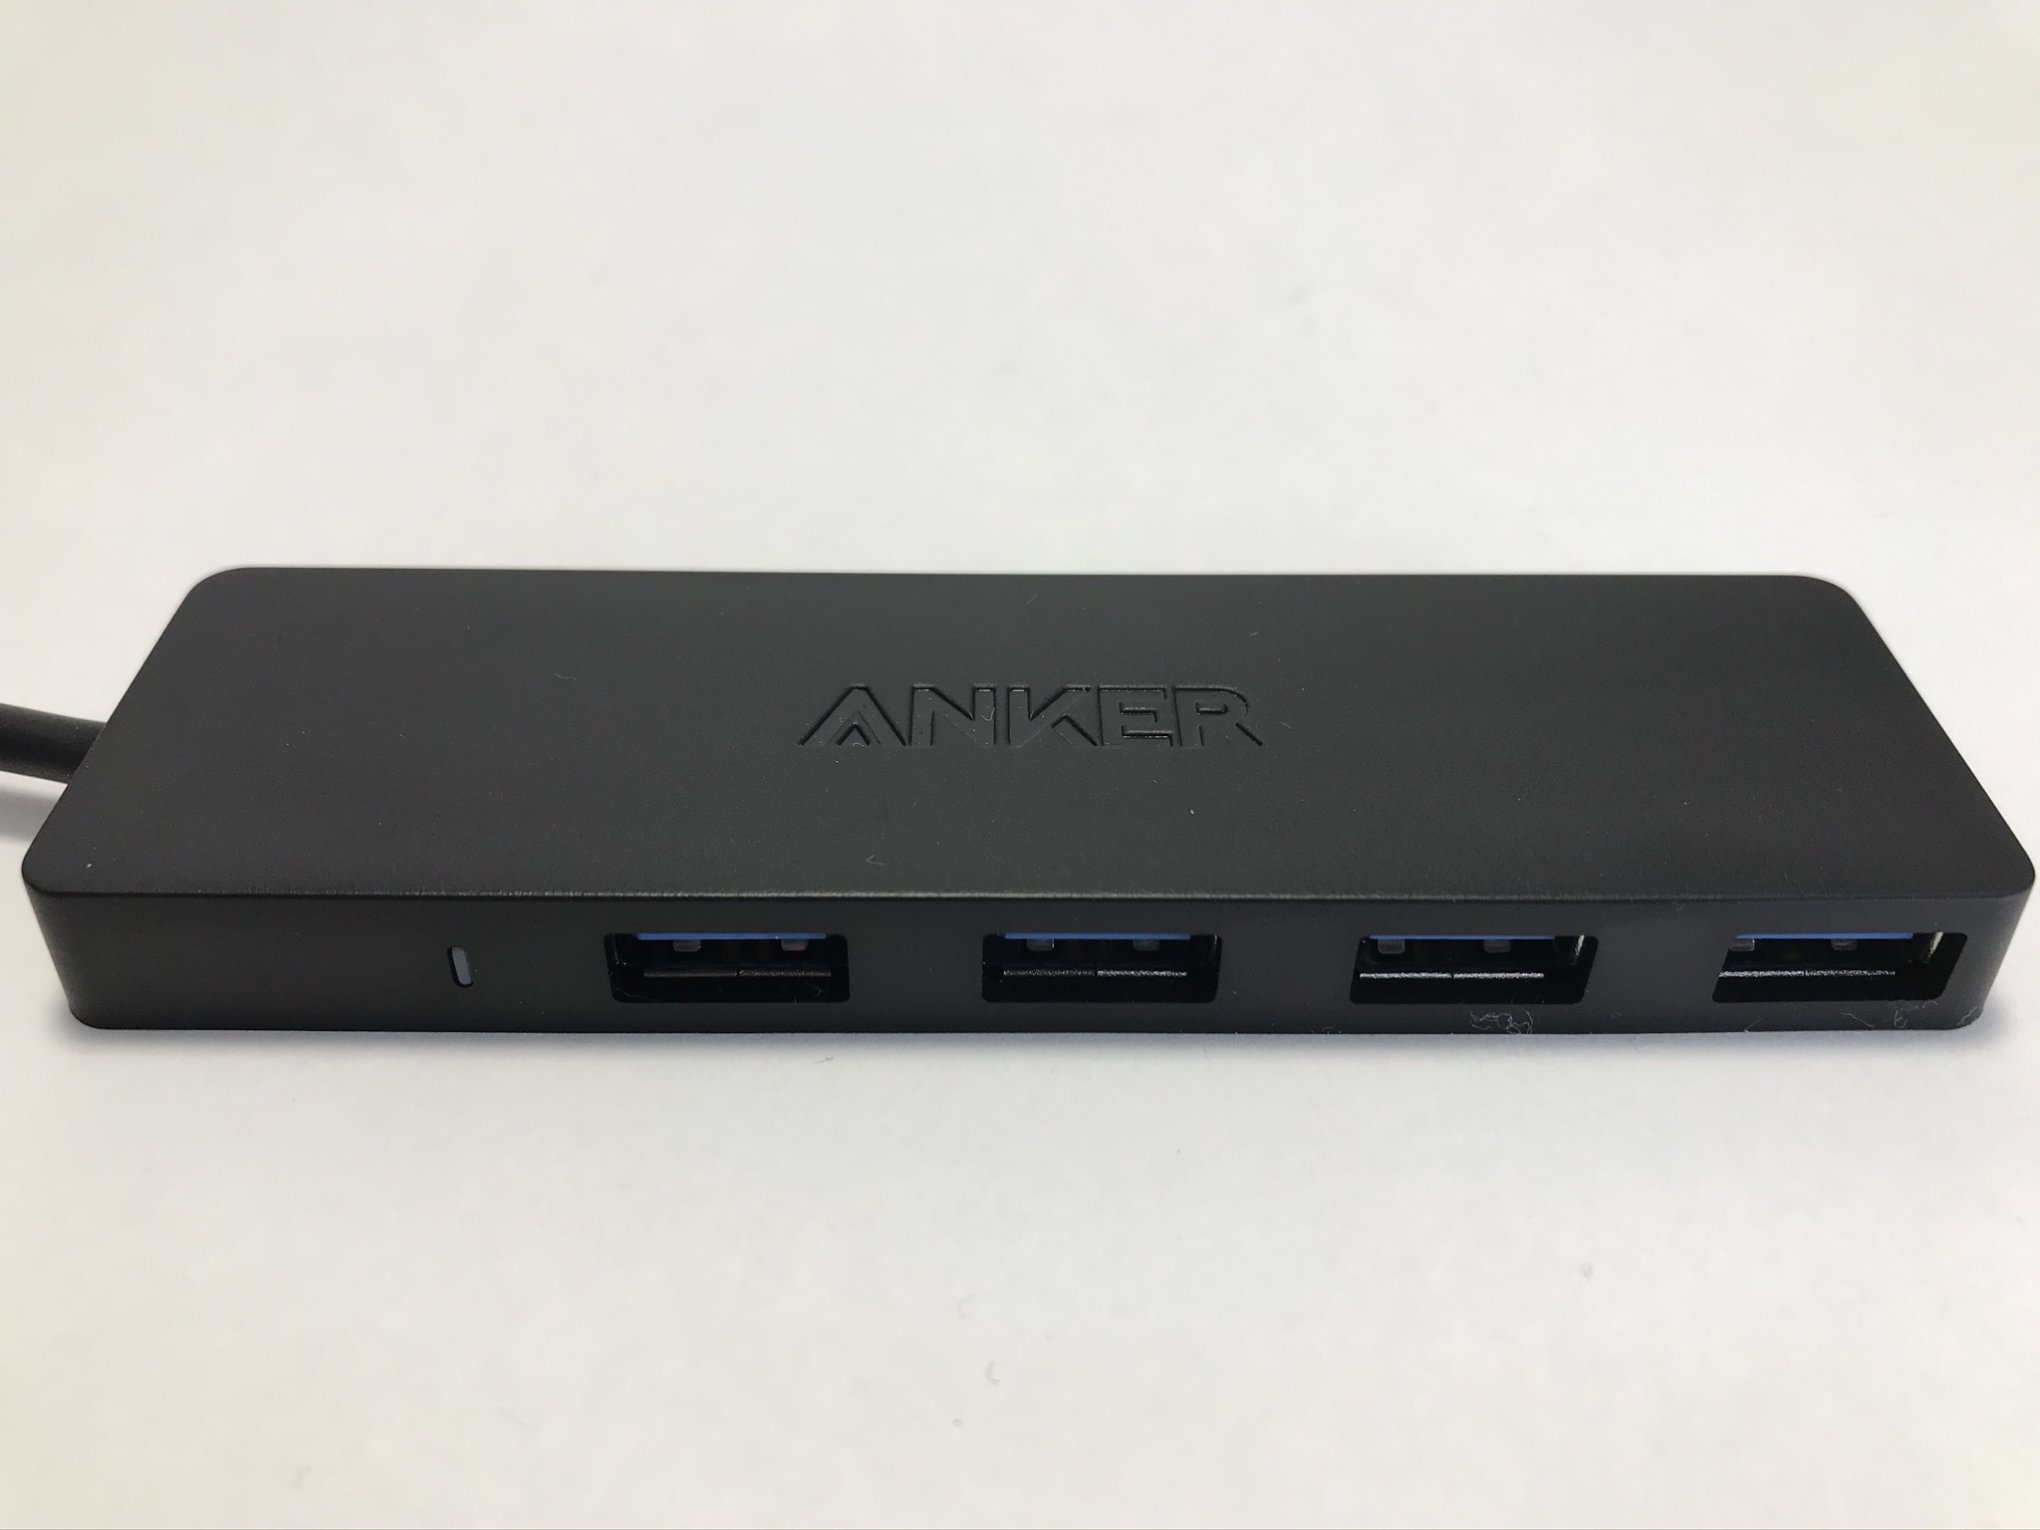 店内全品対象 Anker USB3.0 ウルトラスリム 4ポートハブ USB ハブ 60cm ケーブル 5Gbps高速転送 バスパワー 軽量 コンパクト  Ma